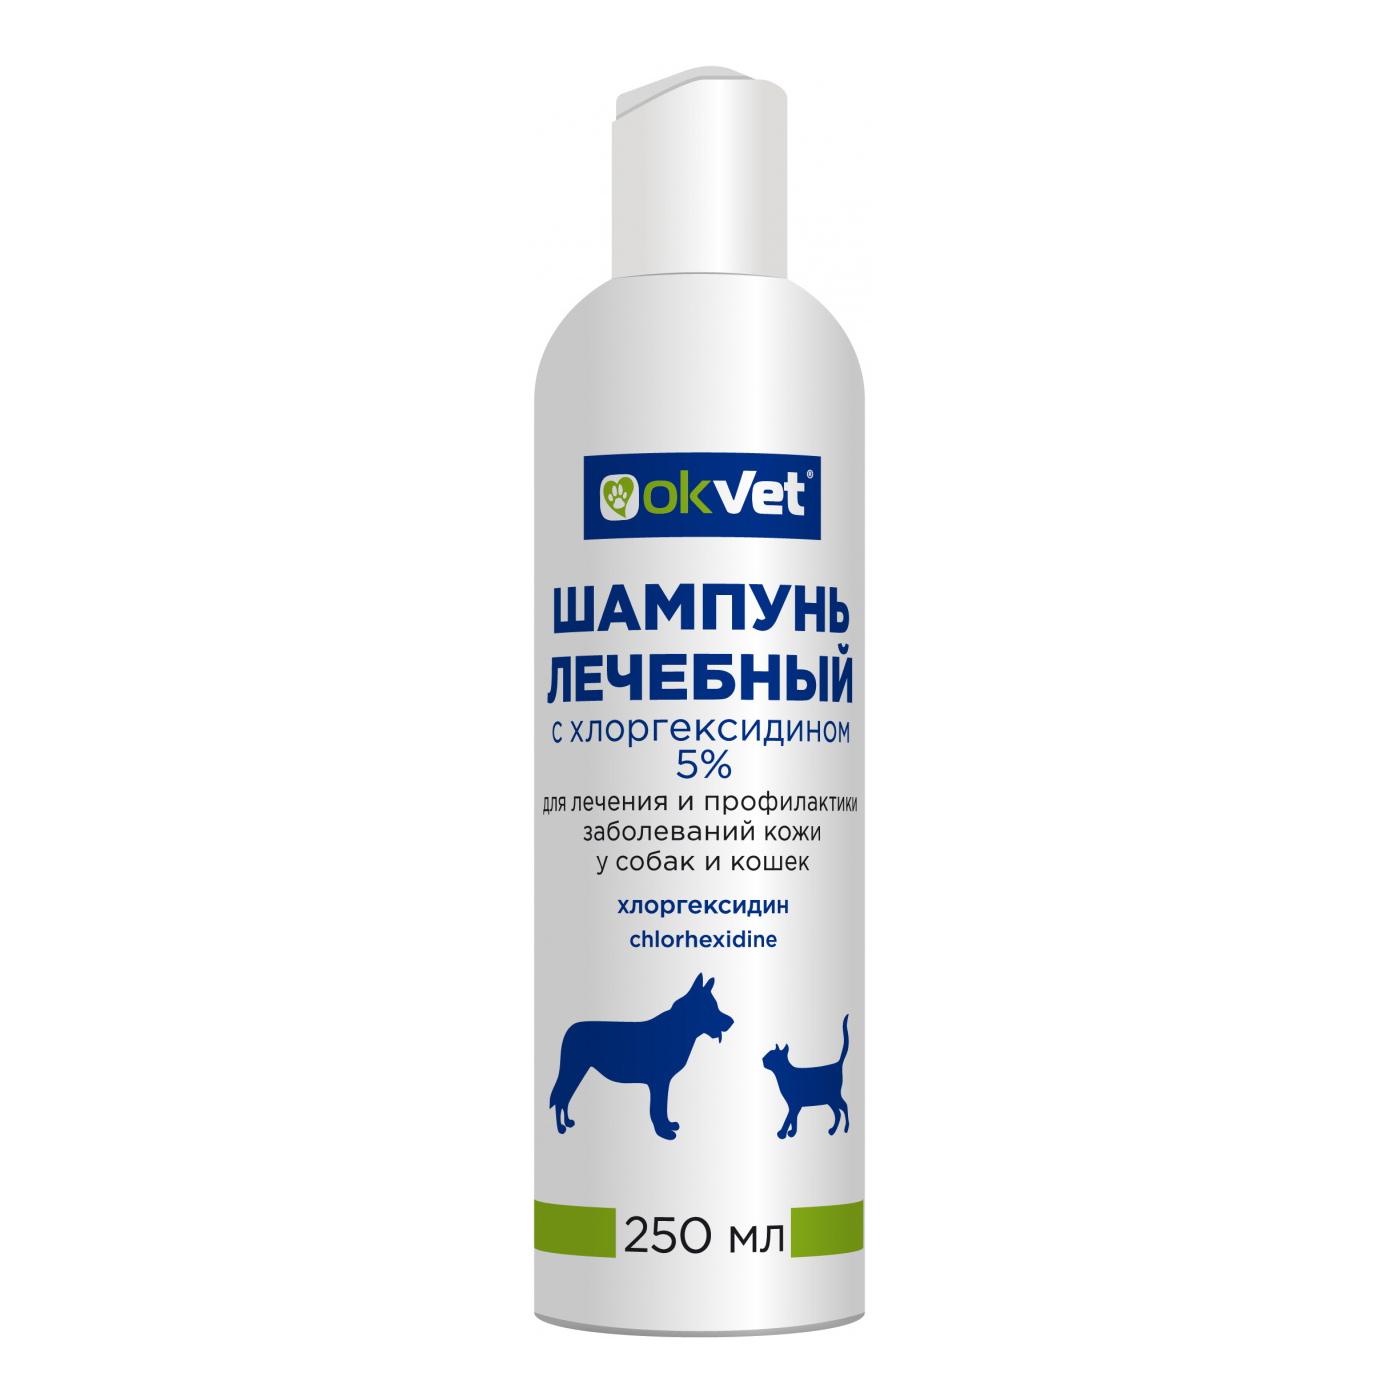 Okvet шампунь лечебный для кошек и собак 250 мл с хлоргексидином 5%